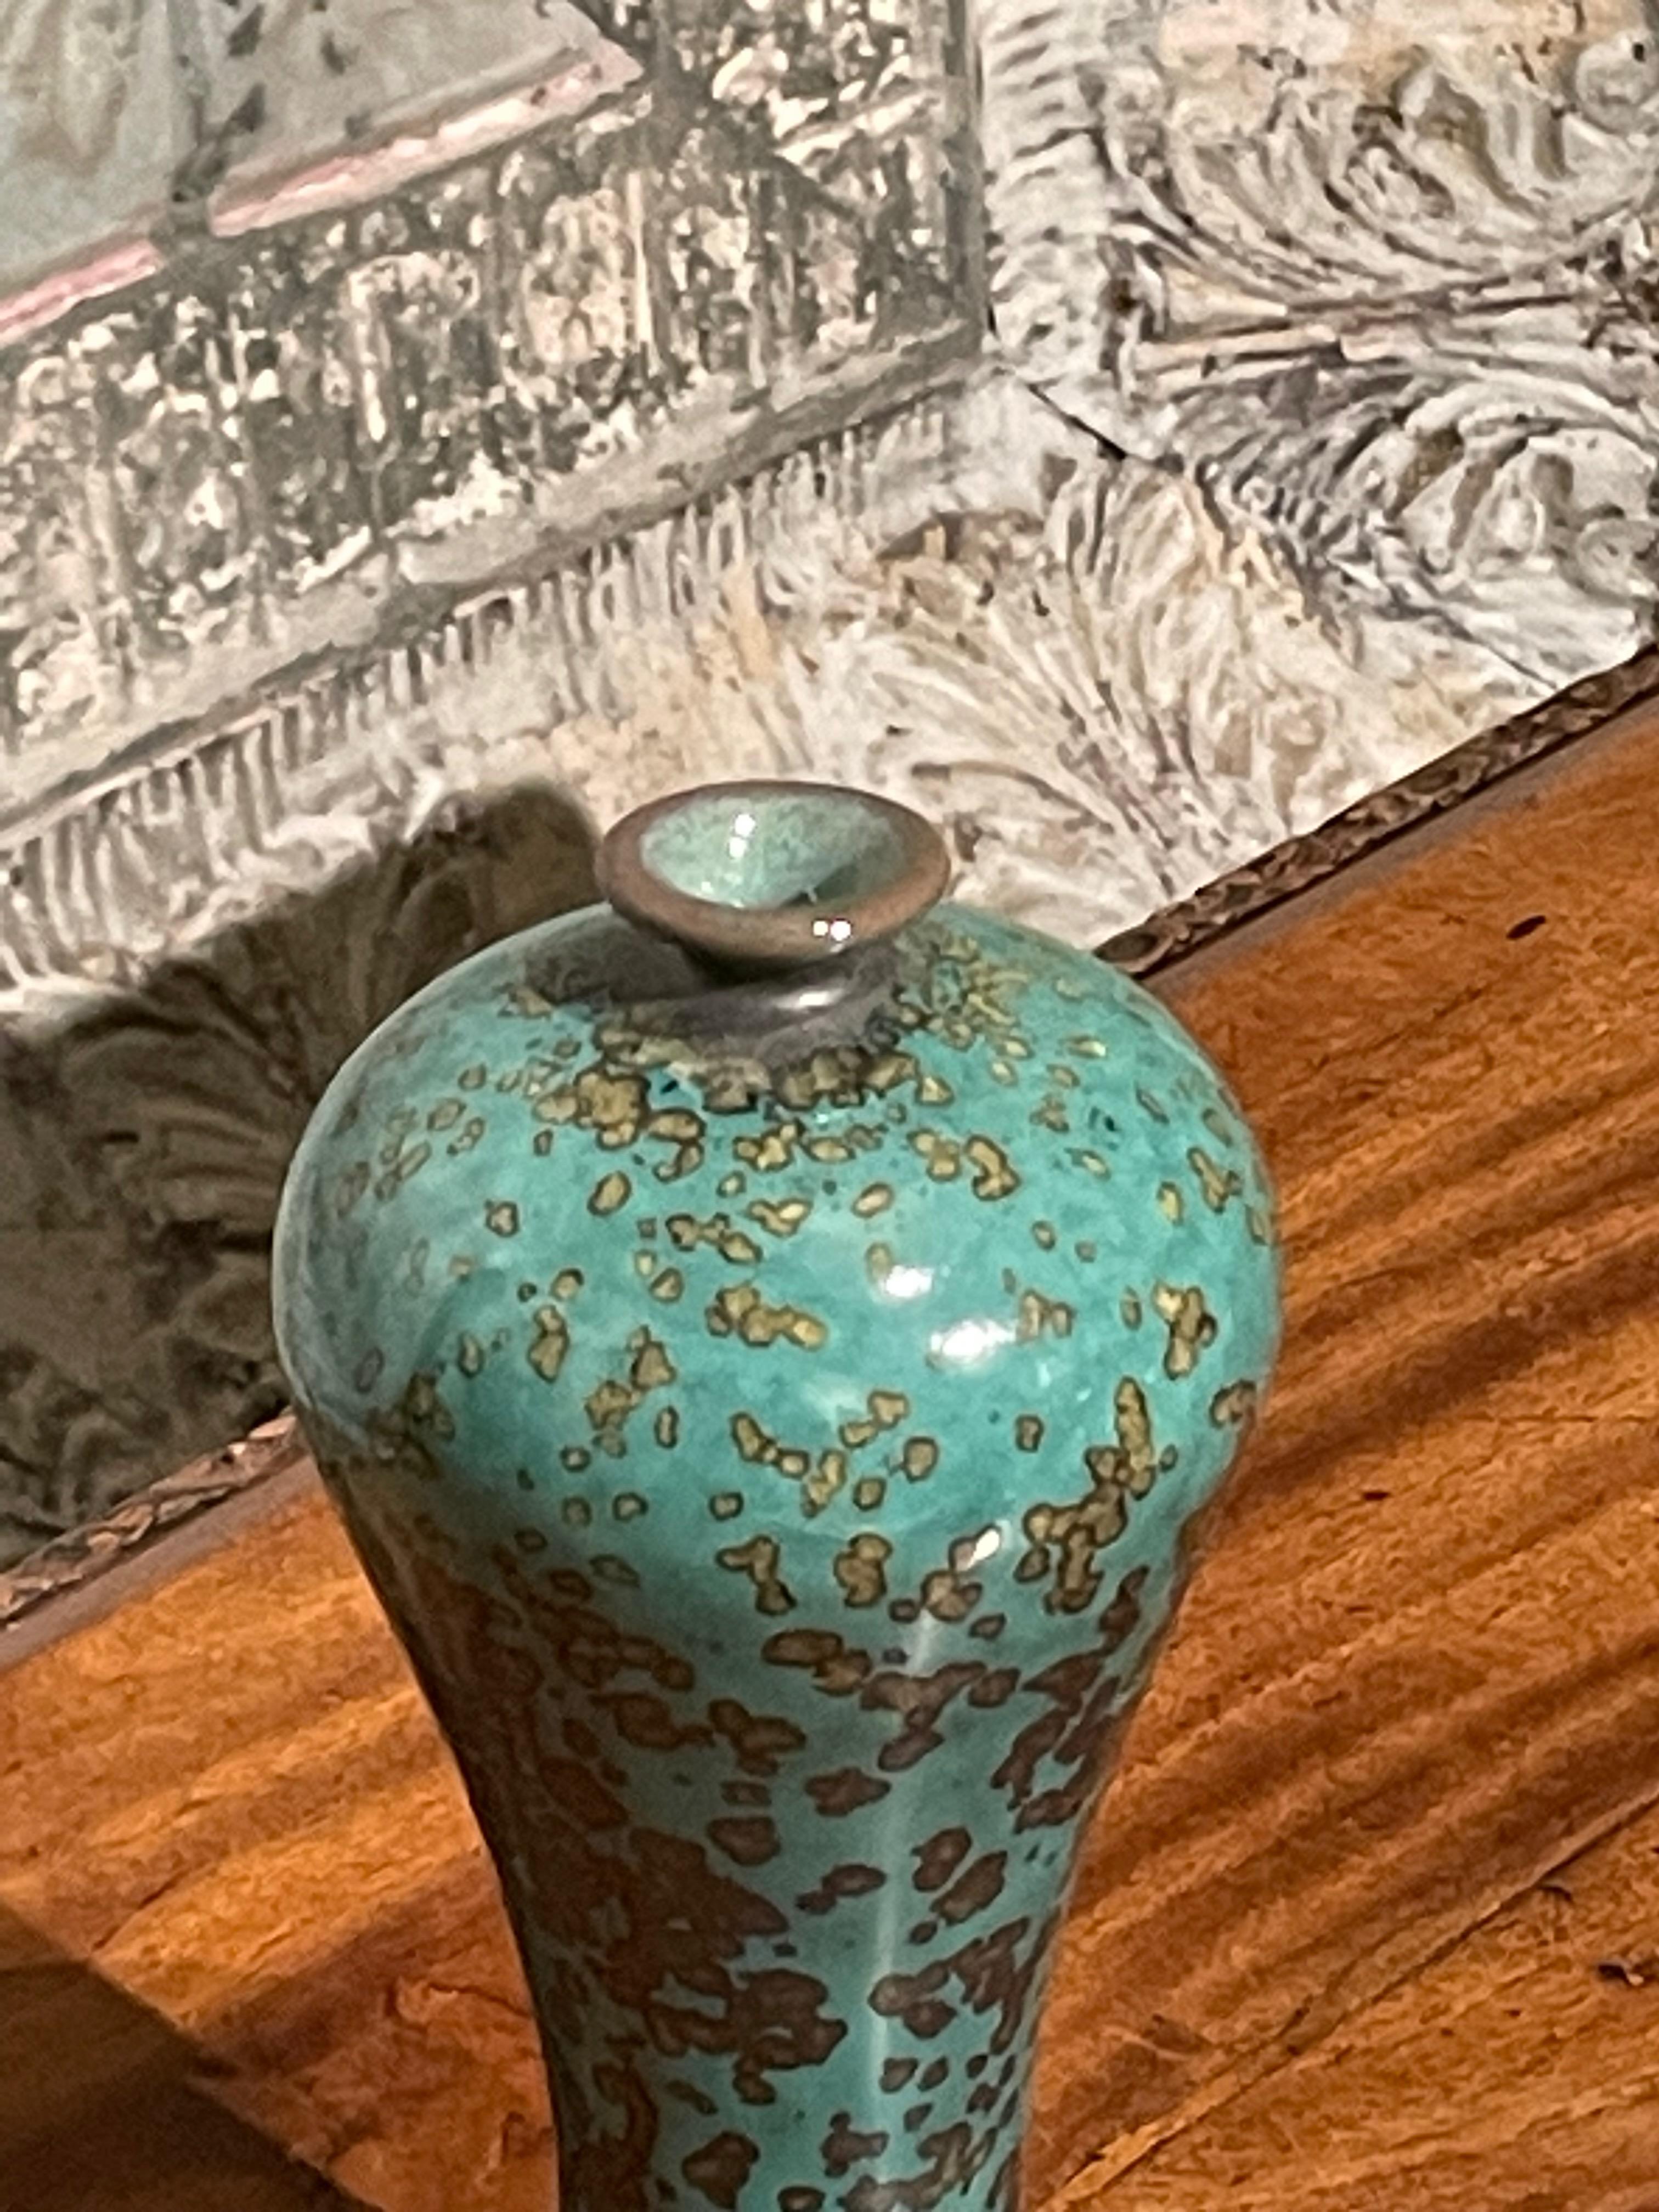 Vase contemporain chinois à glaçure turquoise et mouchetée d'or.
Petit bec et forme tulipe.
Une pièce parmi d'autres d'une grande collection.
ARRIVÉE EN MARS